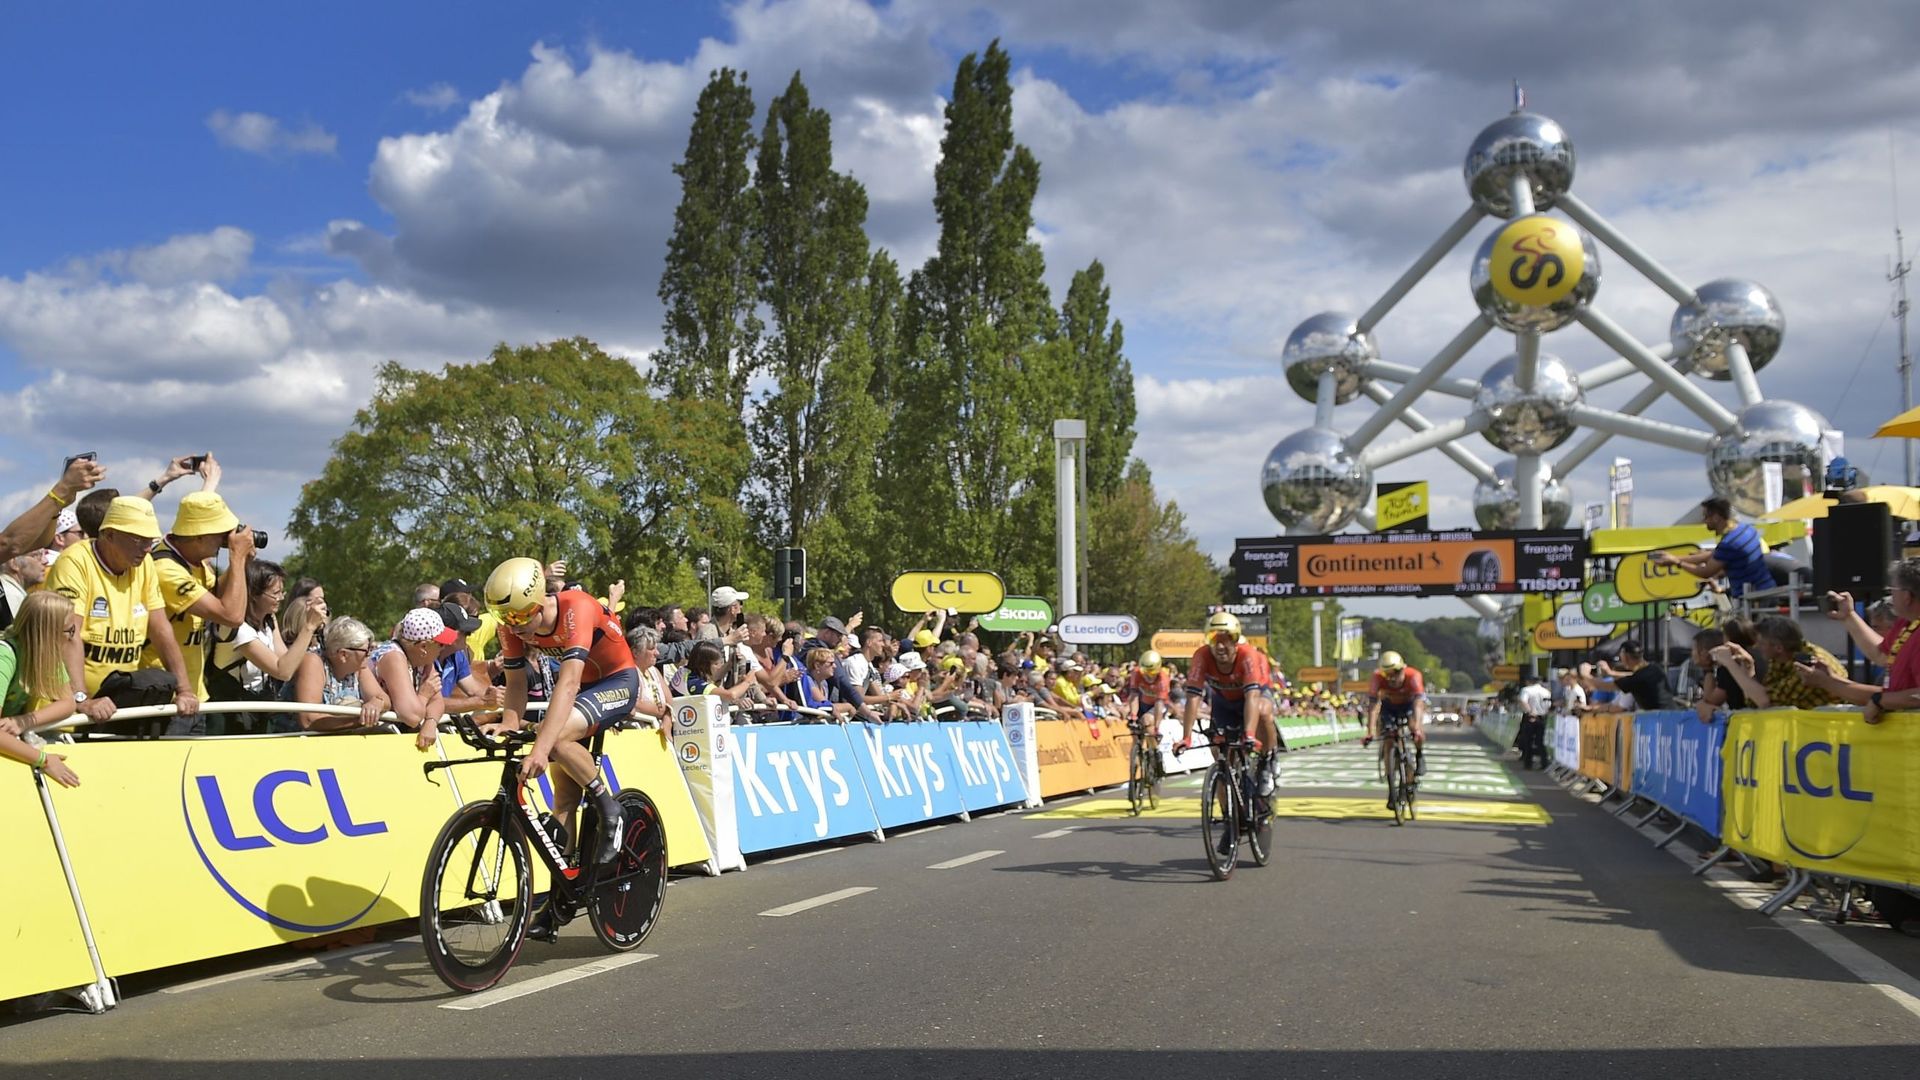 Plus de 650 000 visiteurs en 2019 à l'Atomium, la 3e meilleure année en termes d'affluence. Le Tour de France 2019, parti de Bruxelles, a contribué à lui donner de la visibilité.